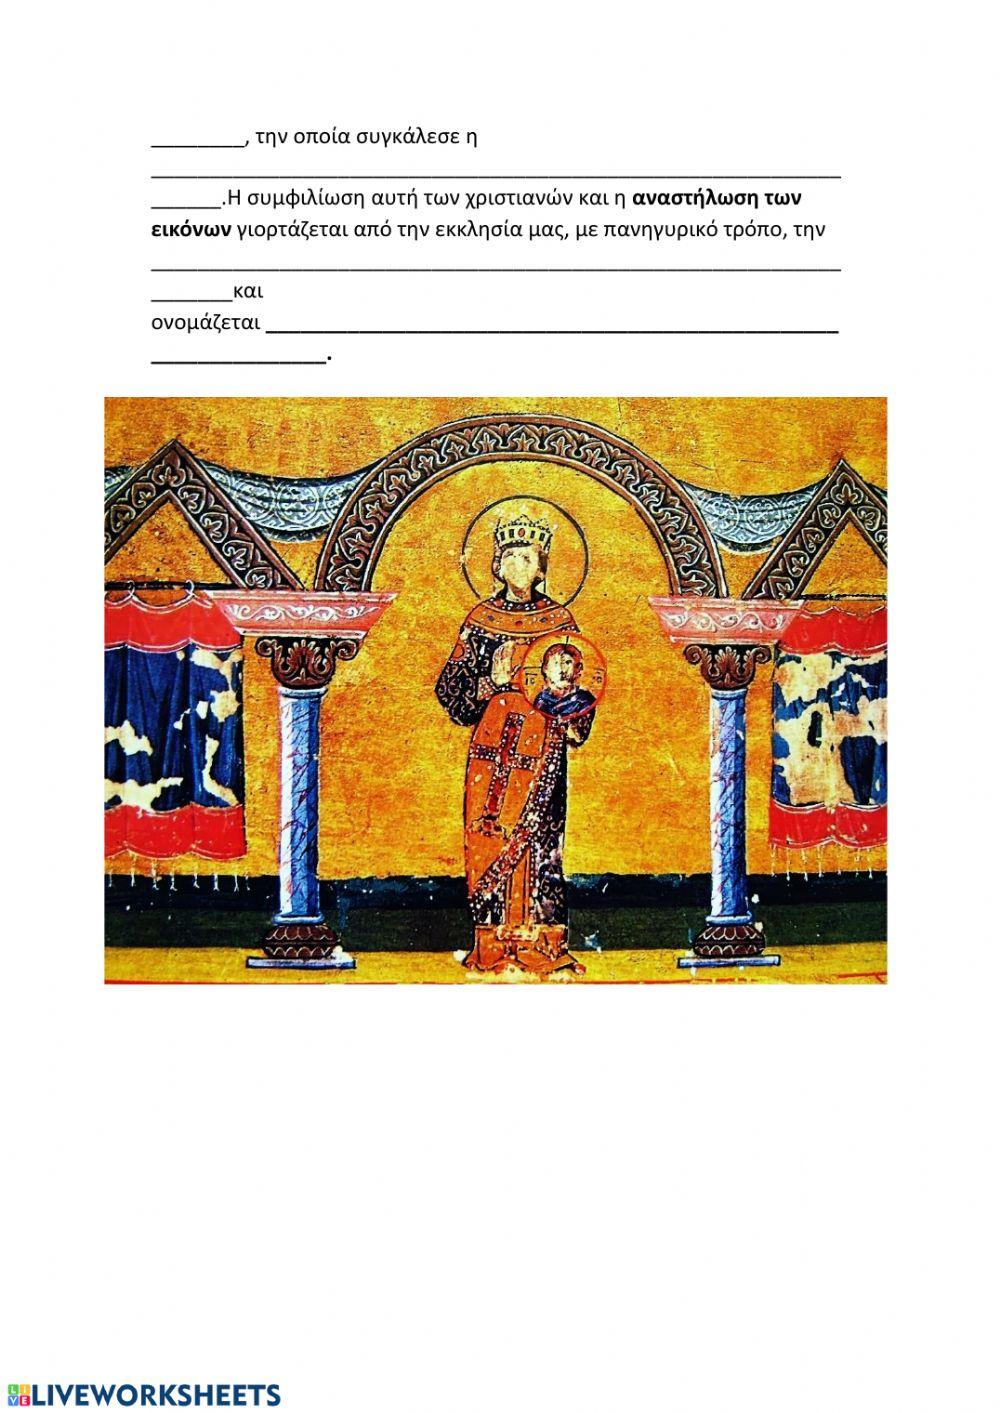 Η κρίση της εικονομαχίας διχάζει τους Βυζαντινούς